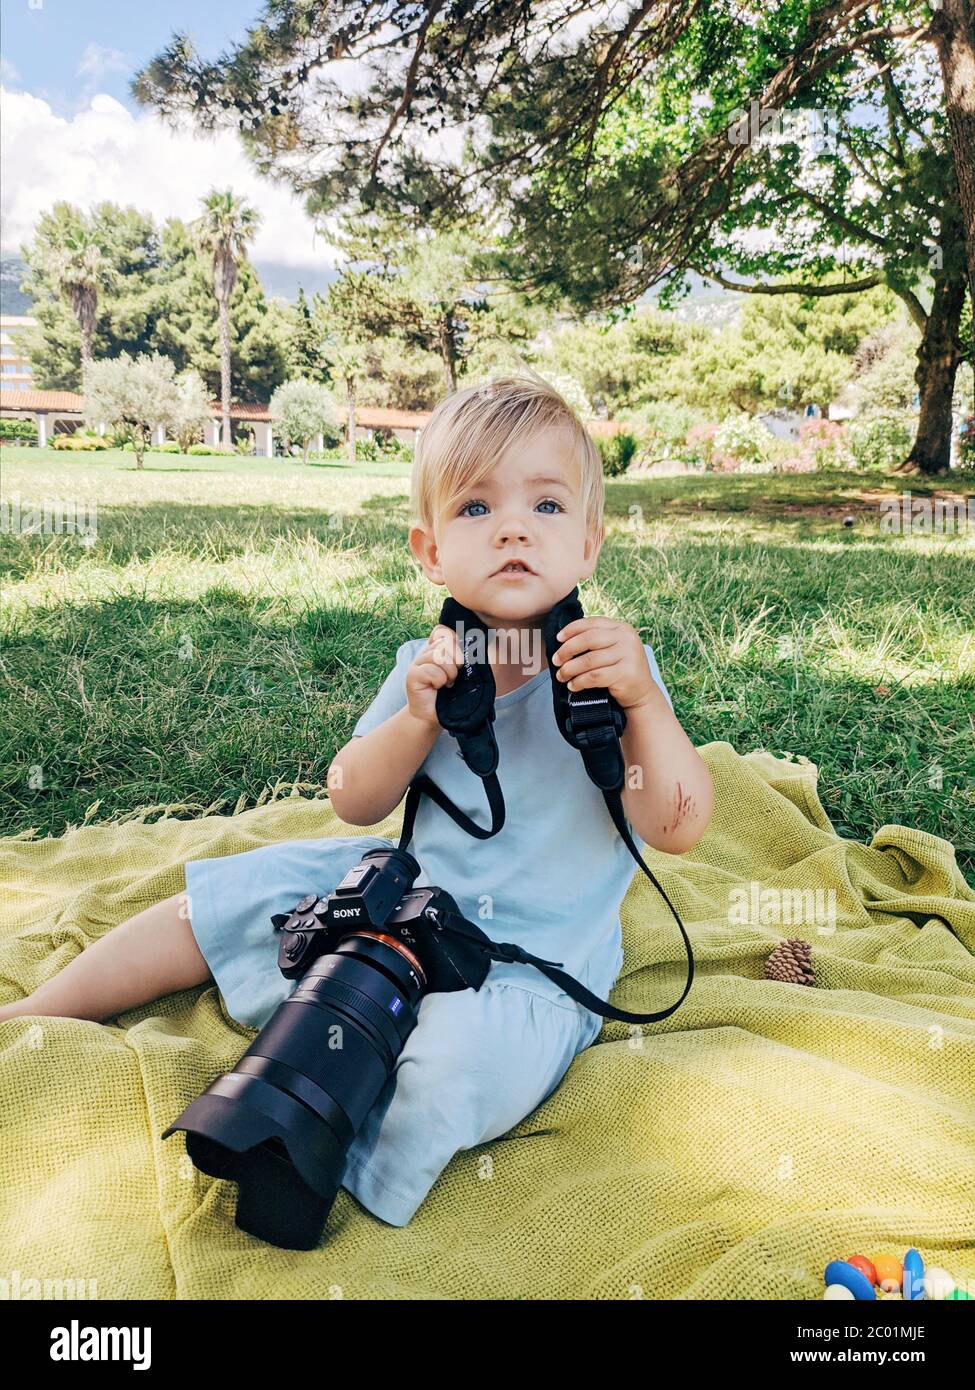 Budva, Montenegro - 10 giugno 2020: Una bambina si trova in un parco su una plaid, con una fotocamera a7III Sony e 35mm f1.4 Carl Zeiss intorno al collo. Foto Stock